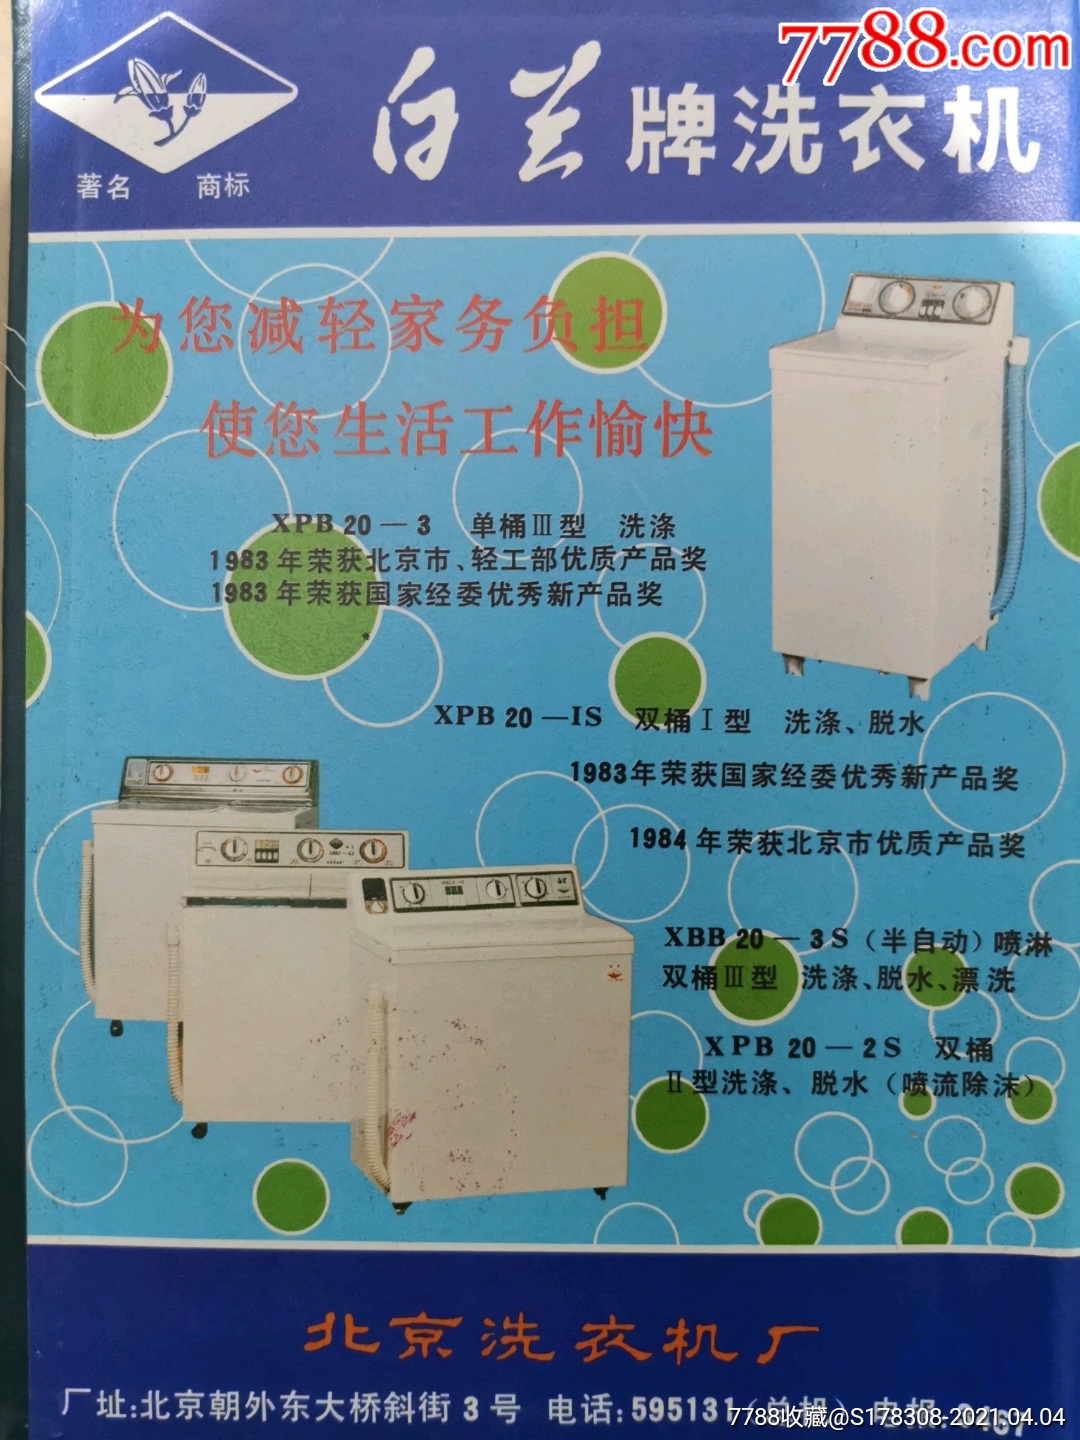 北京洗衣机厂-白兰牌洗衣机广告